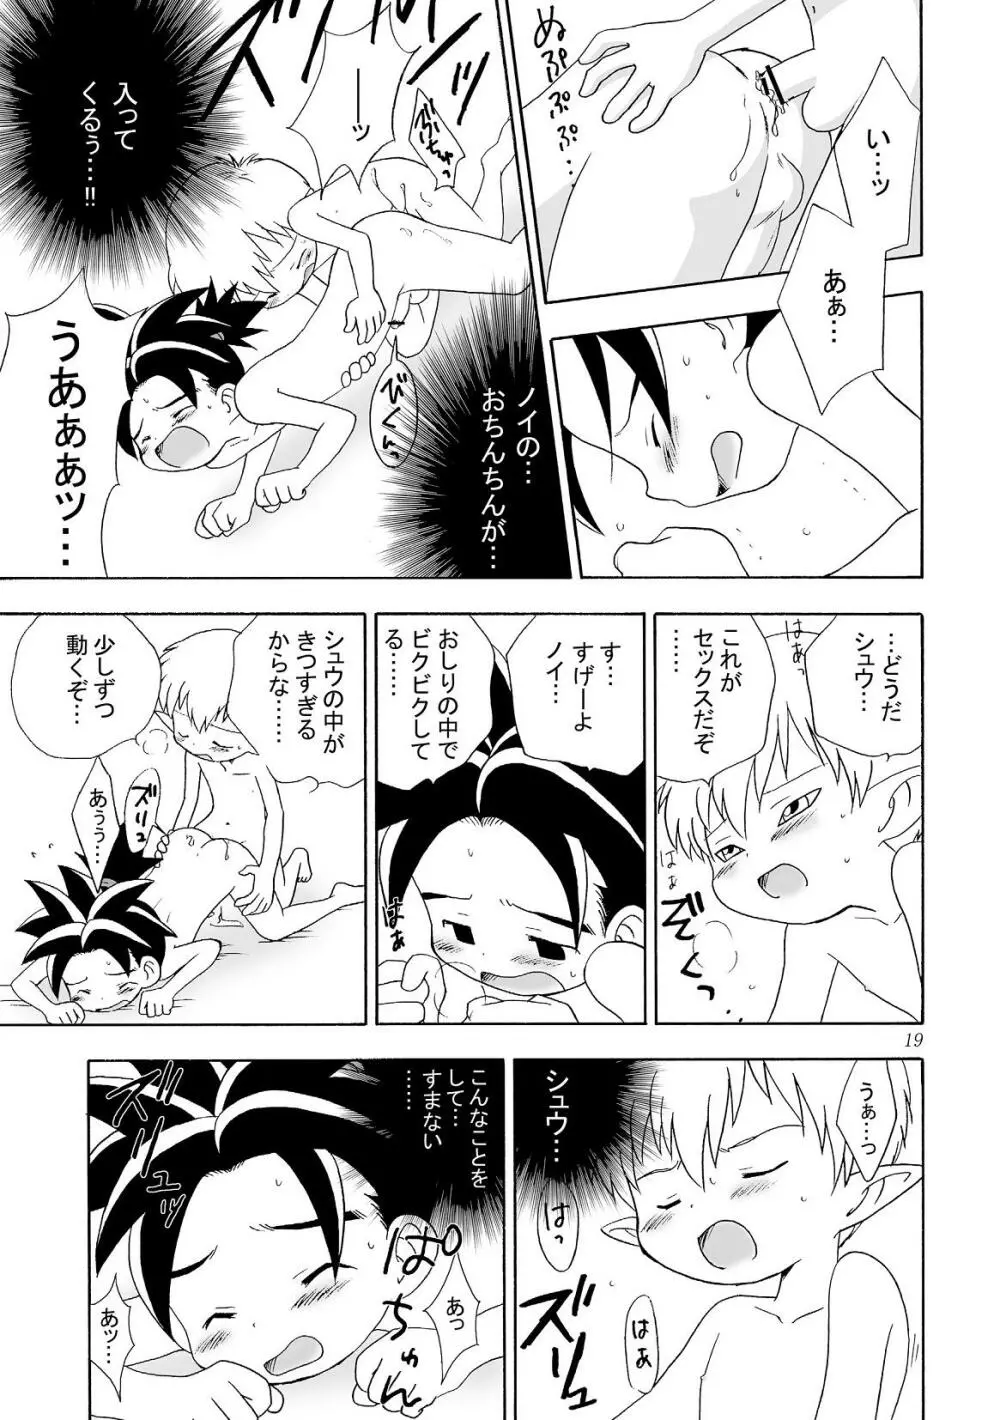 Yumemirukoro Sugitemo - One Page.19